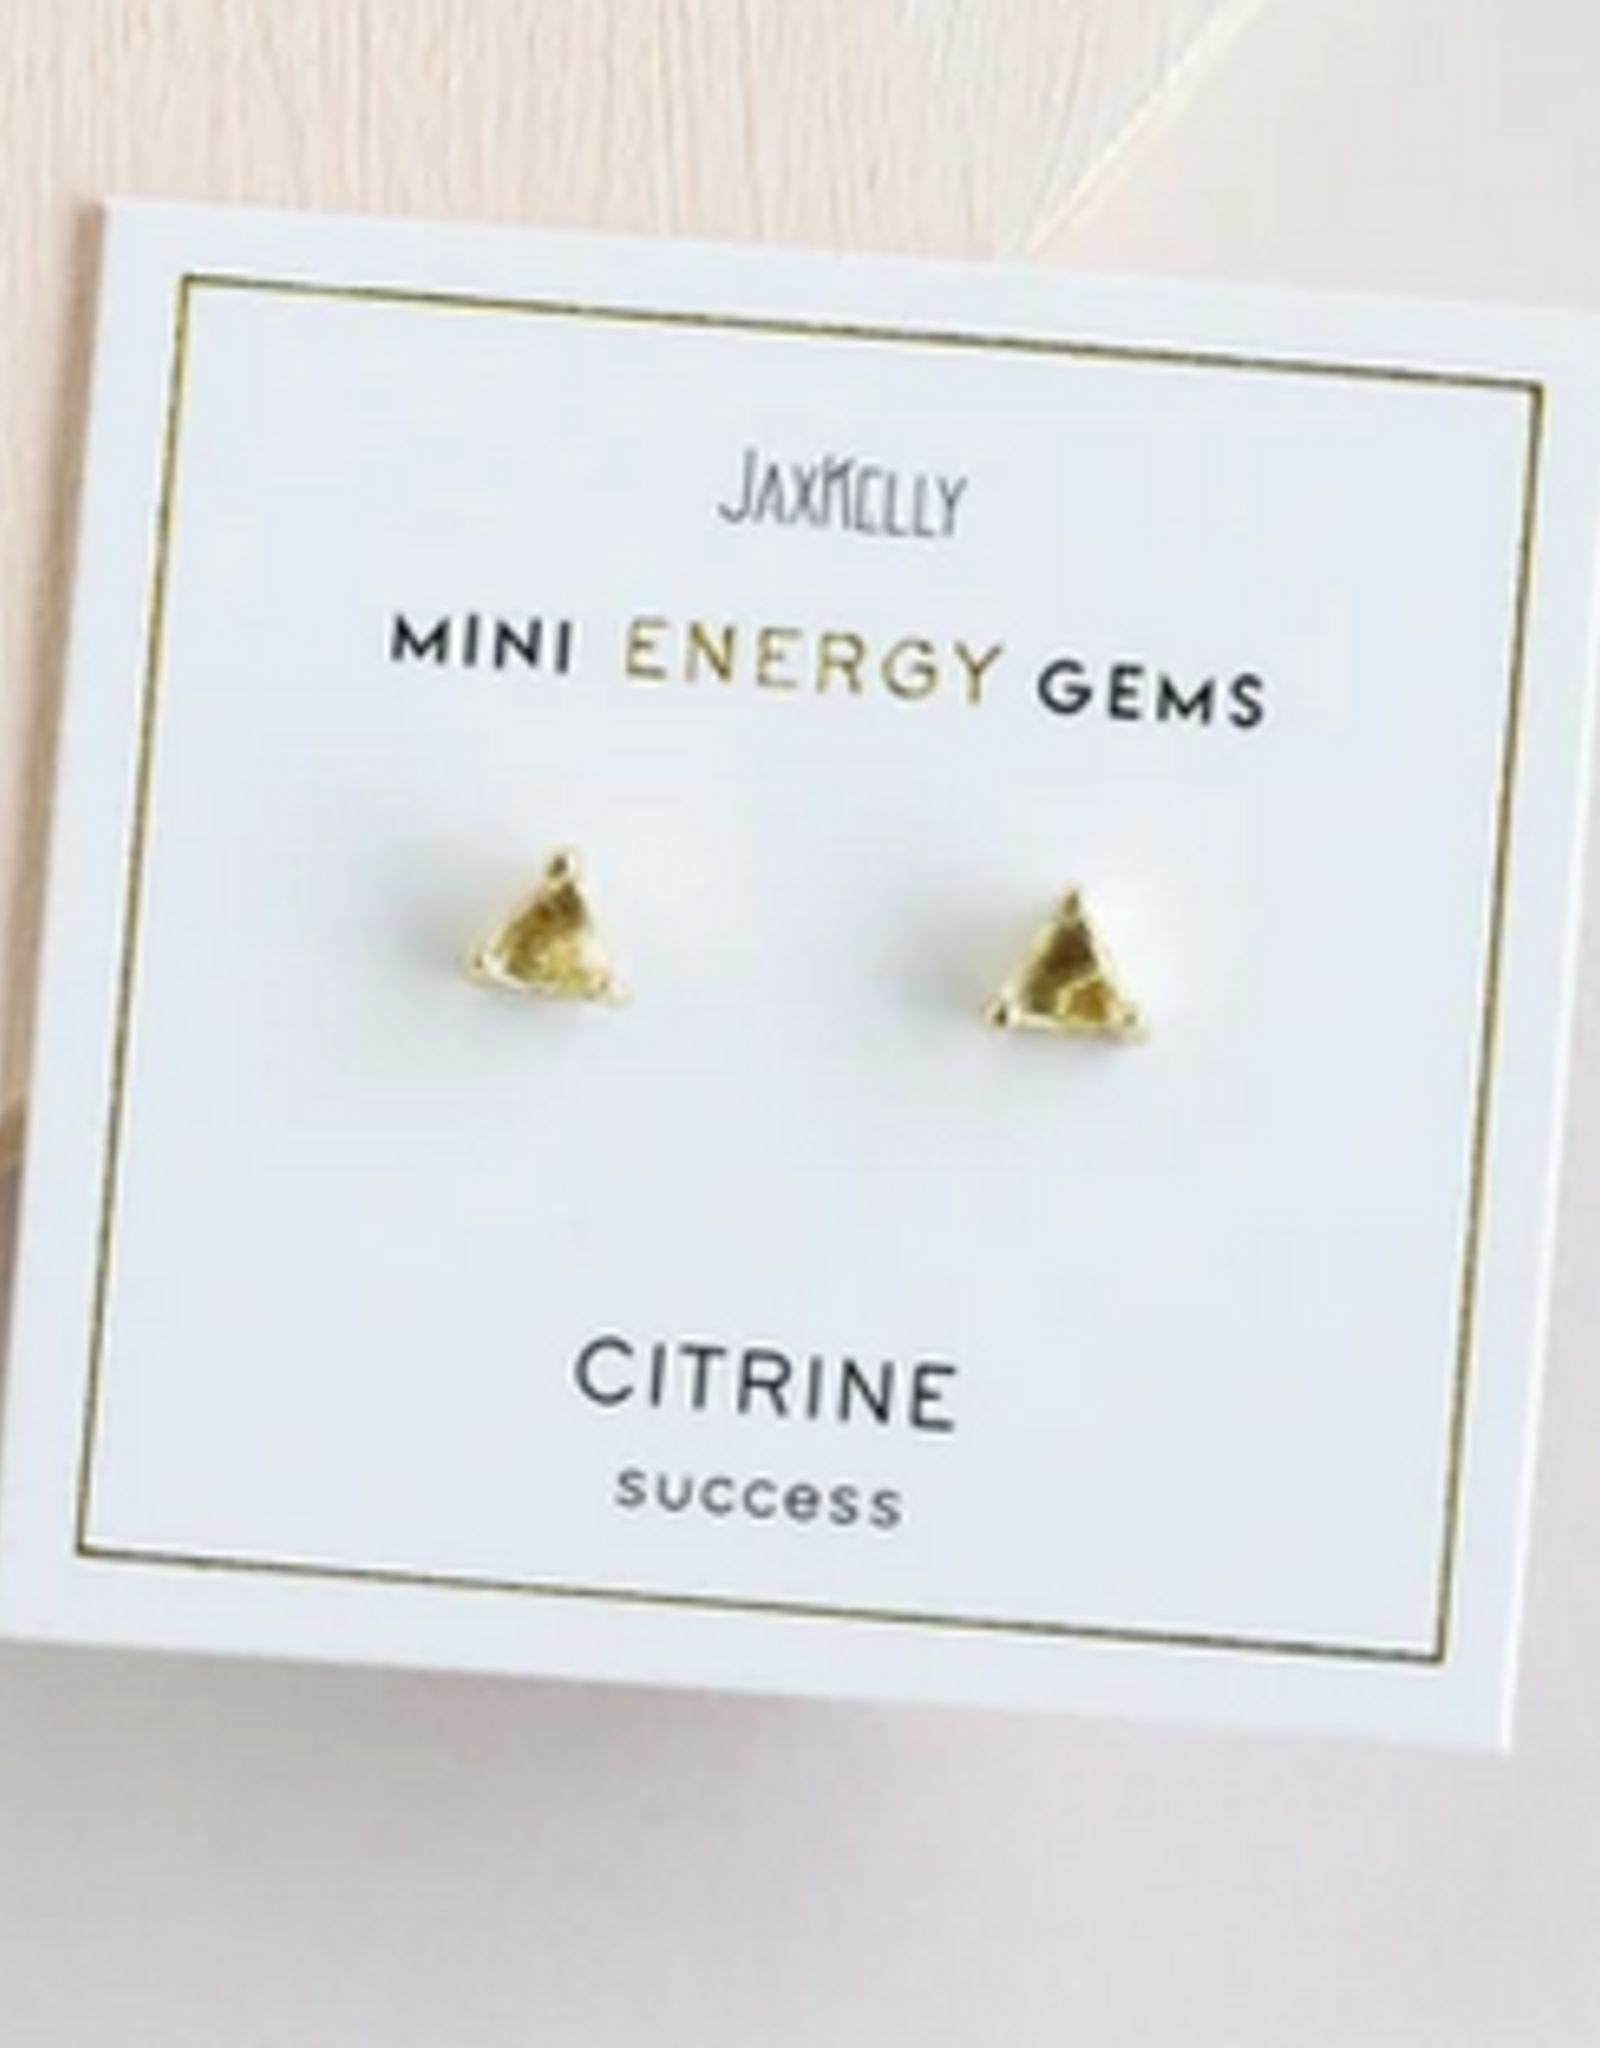 Mini Energy Gem Earrings - Citrine